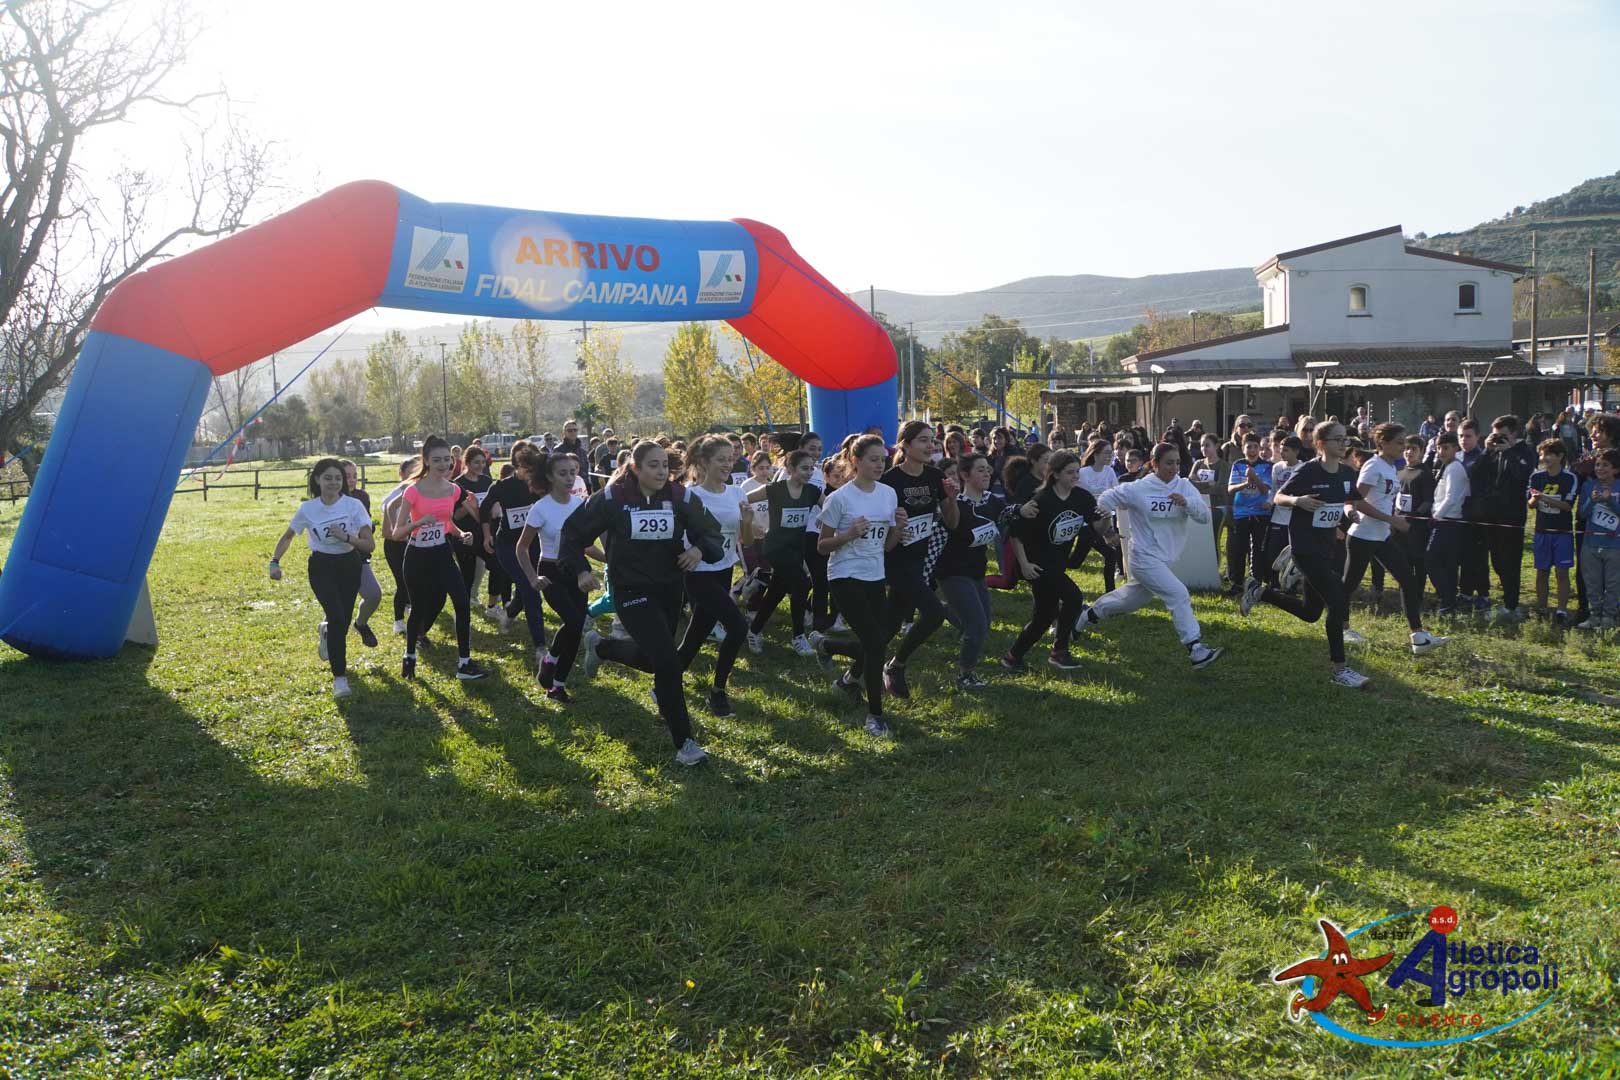 Corsa campestre, ad Agropoli ritornano i campionati regionali di società